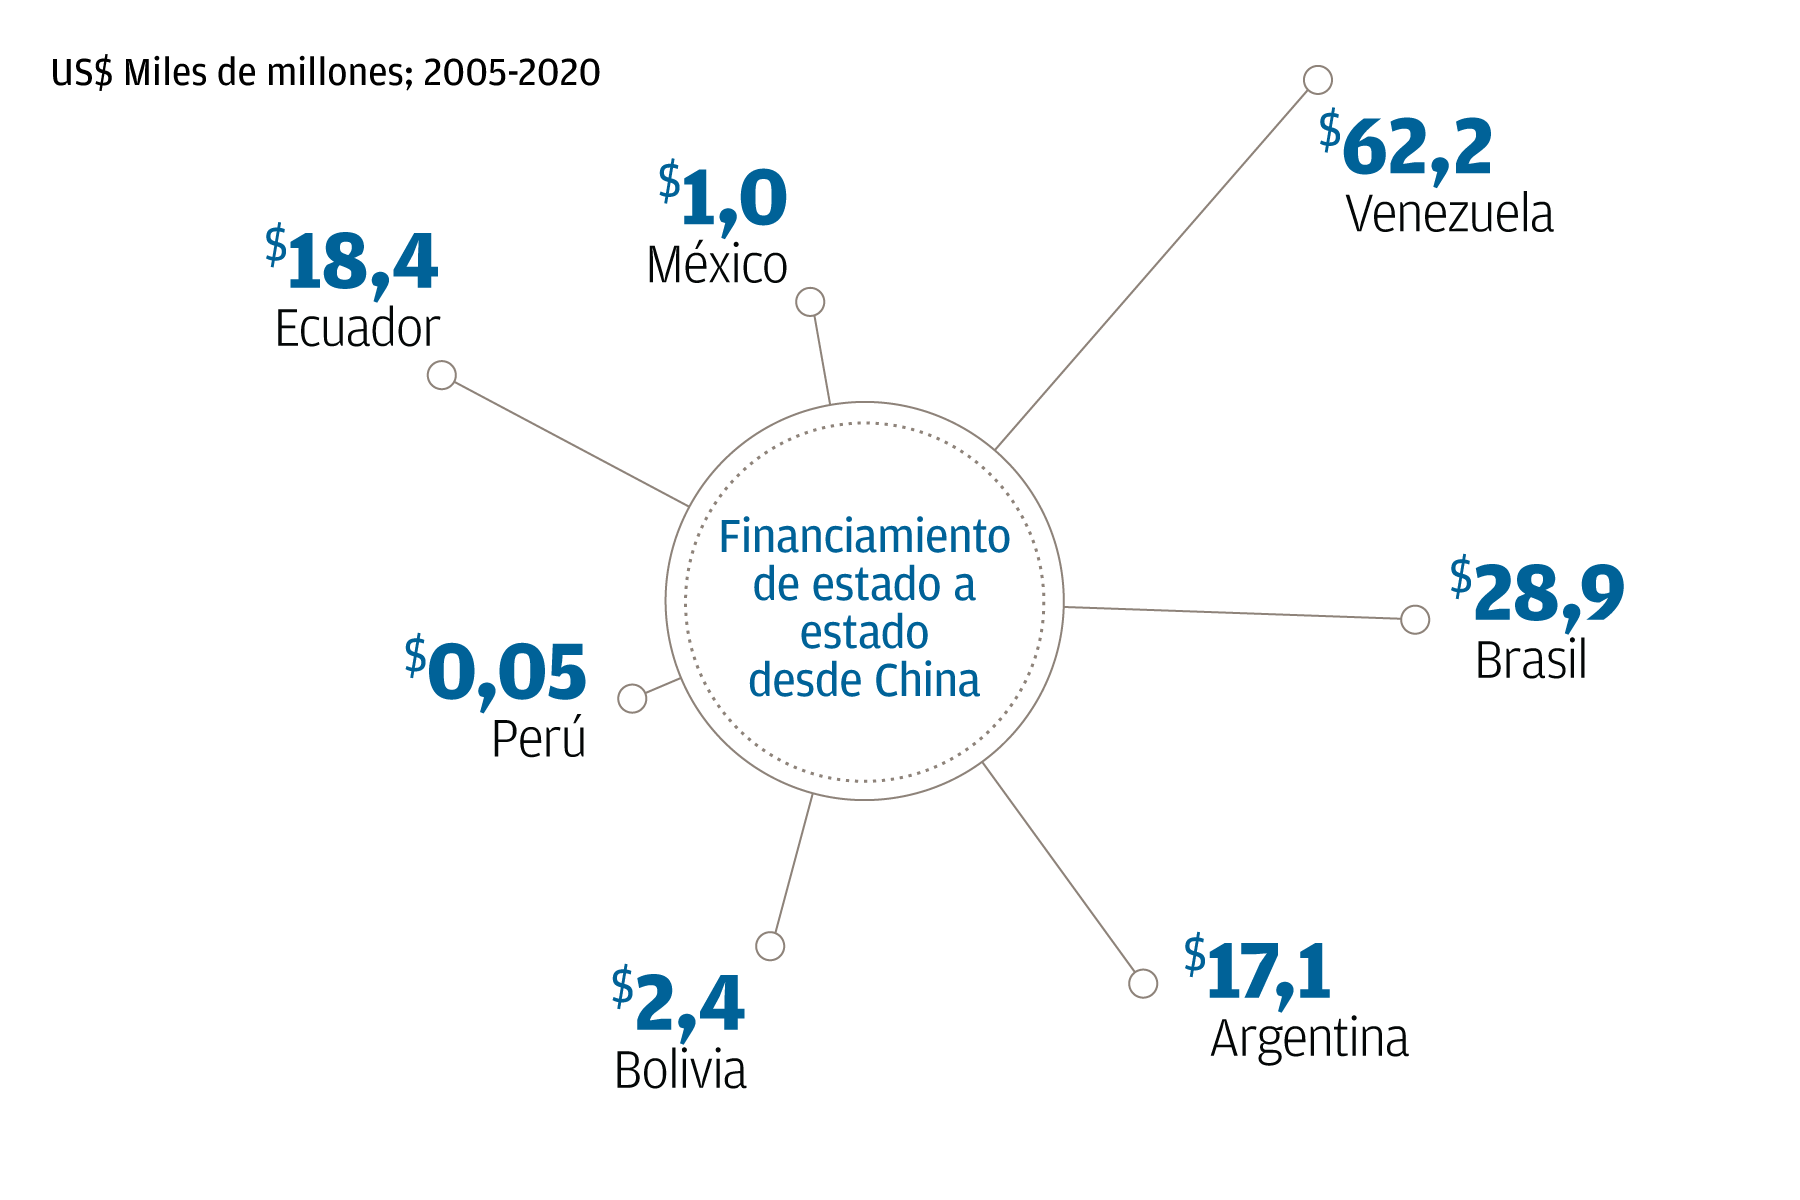 Un gráfico que ilustra el financiamiento de estado a estado de China a países de América Latina de 2005 a 2020. Venezuela recibió $ 62.2B en préstamos, Brasil $ 28.9B, Argentina $ 17.1B, Bolivia $ 2.4B, Perú $ 0.05B, Ecuador $ 18.4B y México $ 1.0B.